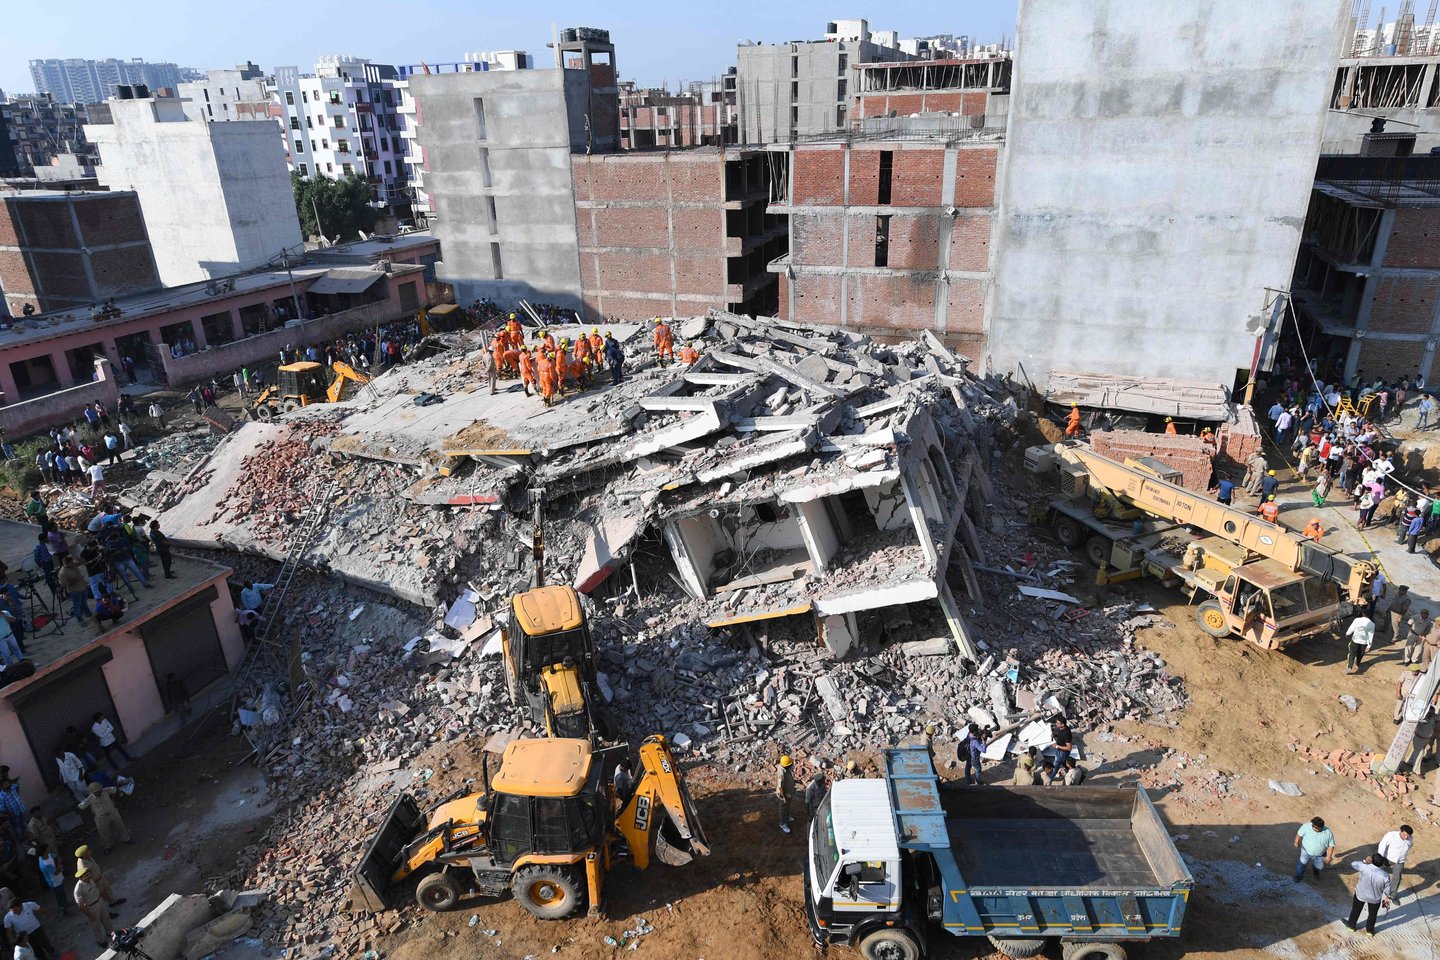  Netoli Indijos sostinės Delio ant gyvenamojo komplekso užgriuvus dar tik statytam pastatui žuvo mažiausiai trys žmonės, trečiadienį pranešė pareigūnai.<br> AFP/Scanpix nuotr.